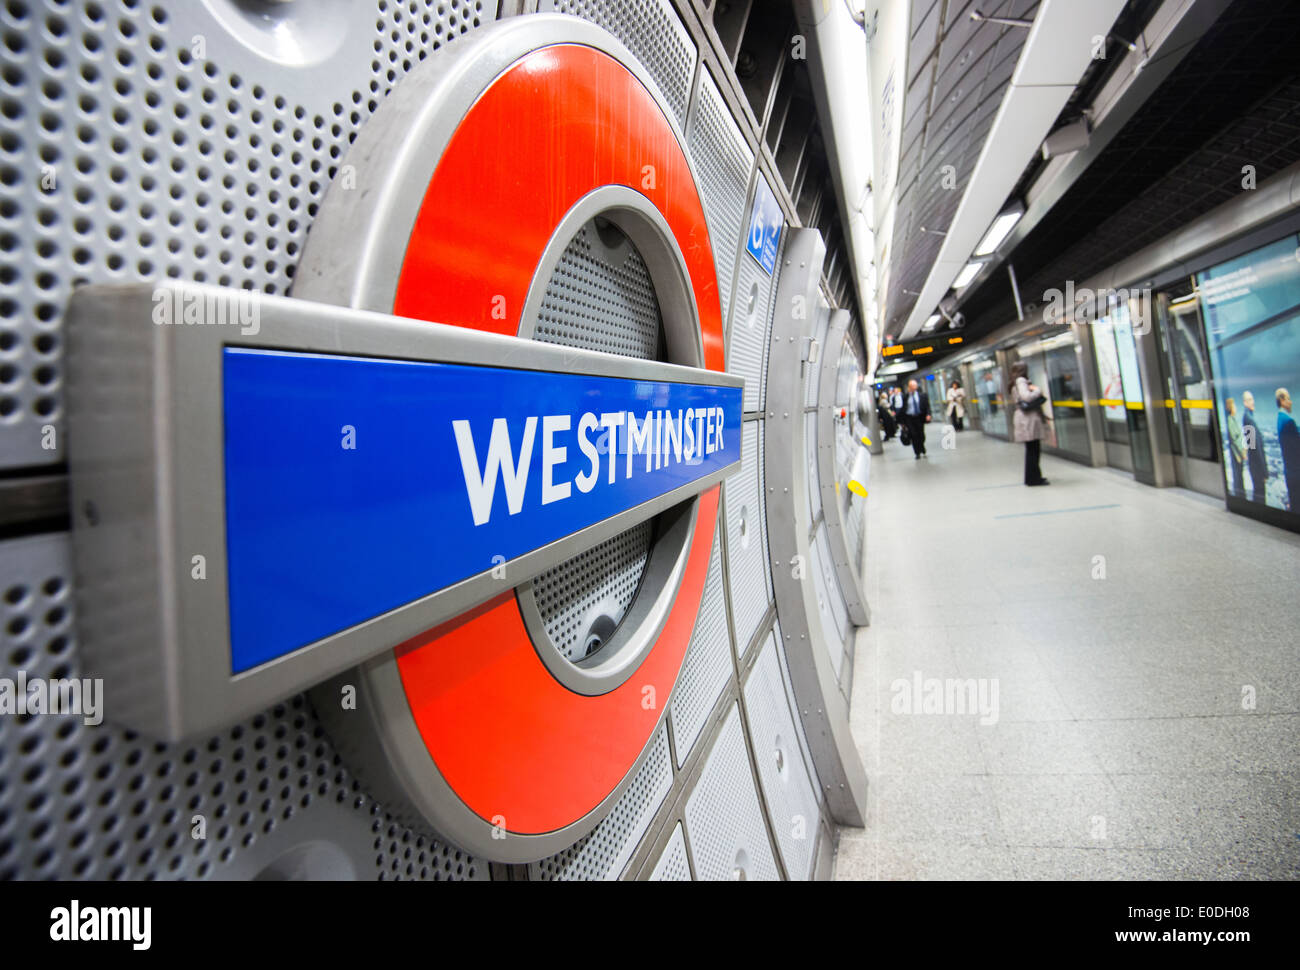 Westminster Station on the London Underground, England UK Stock Photo